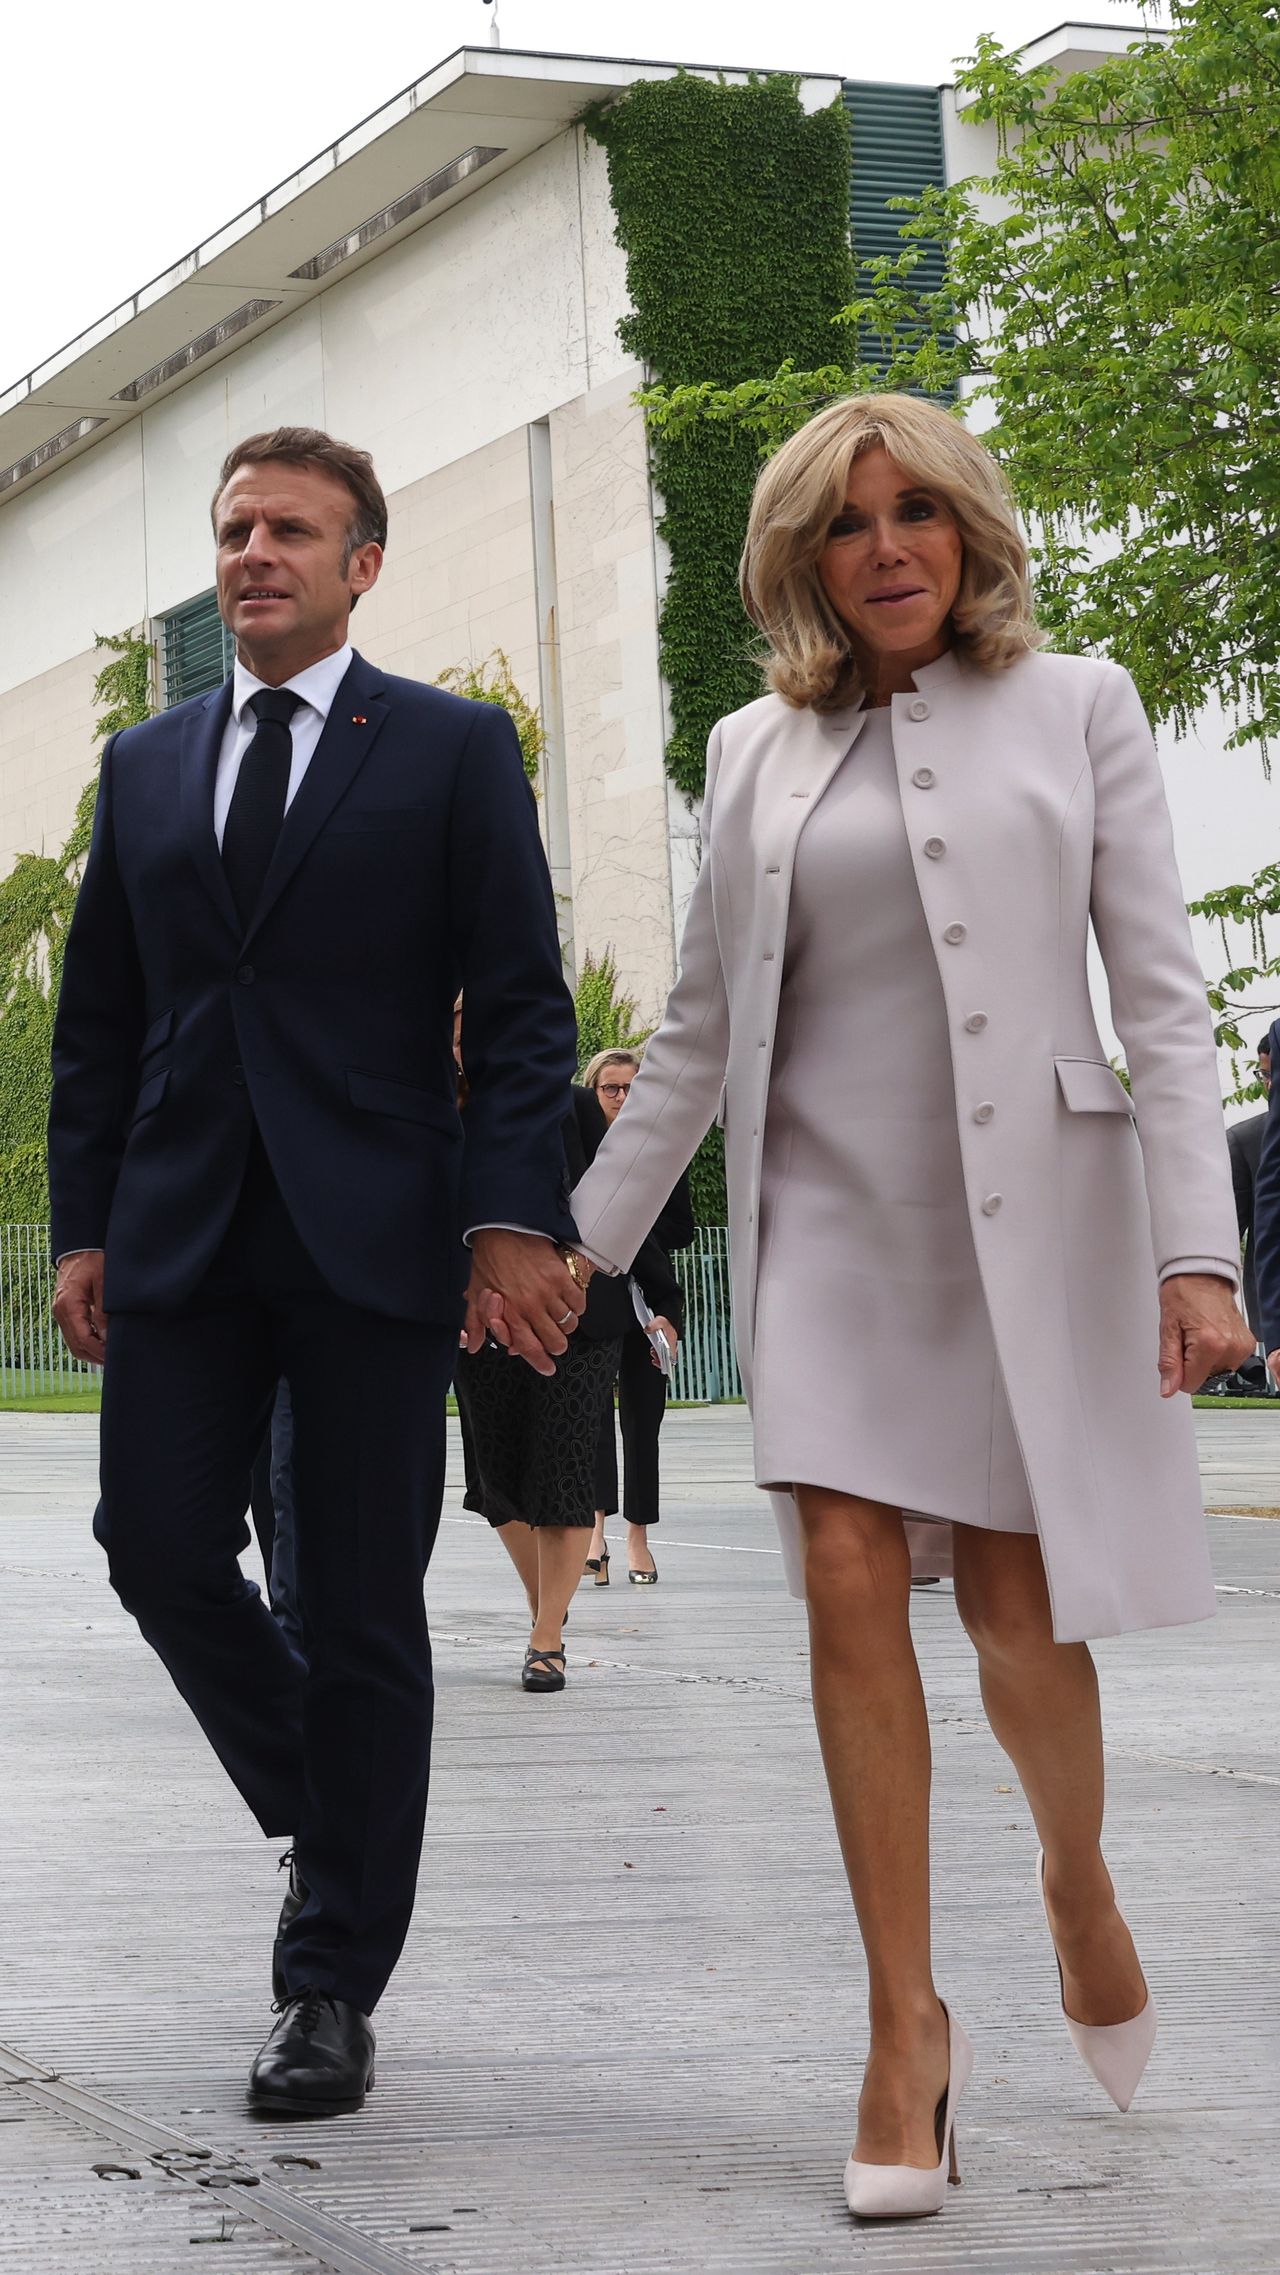 Brigitte Macron and Emmanuel Macron in Germany